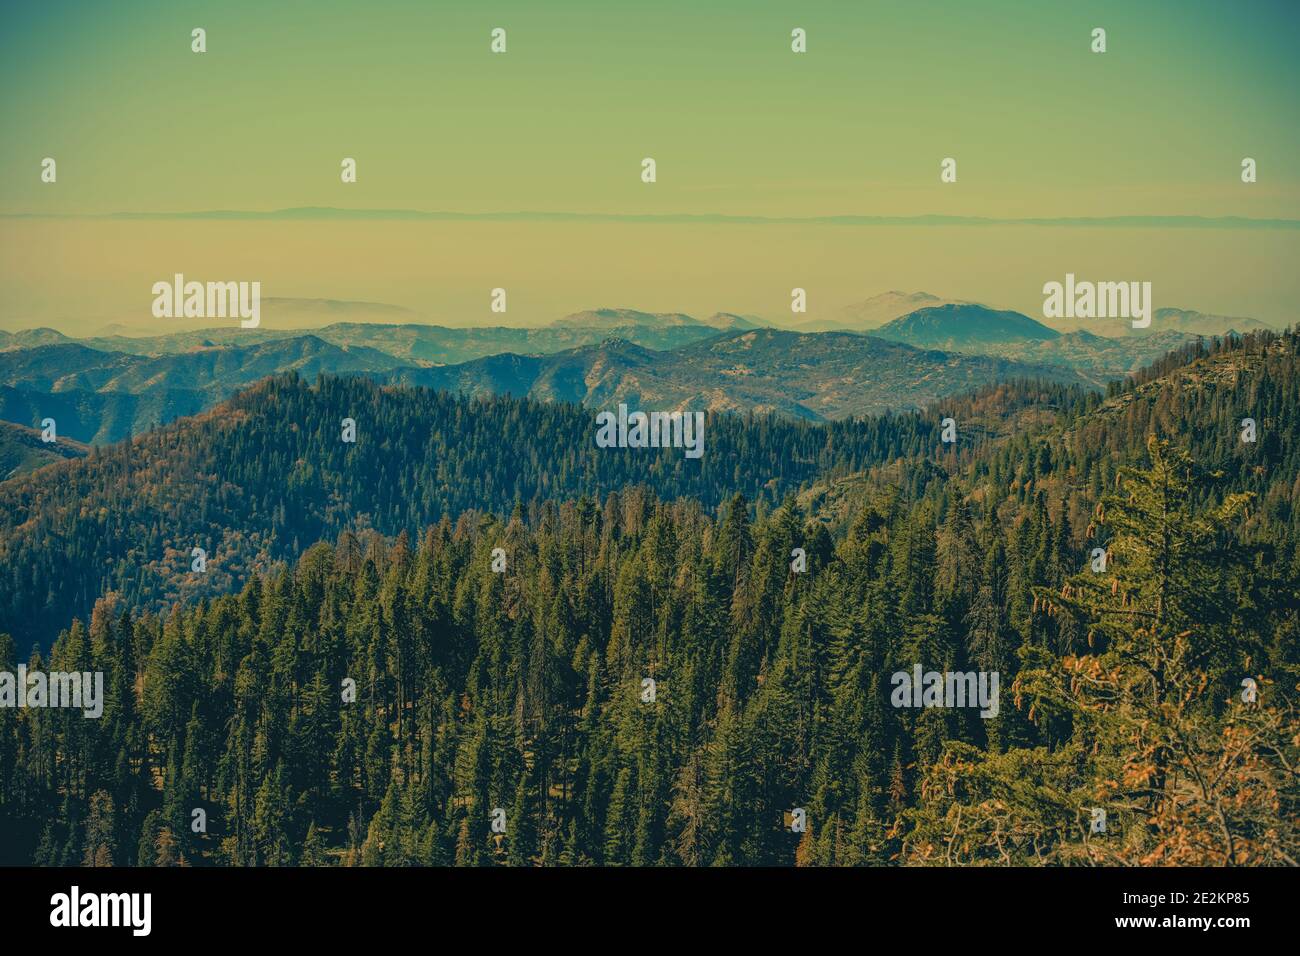 Spätsommer in den Sierra Nevada Mountains im zentralen Osten Kaliforniens in der Nähe von Yosemite und Sequoia National Parks. Vereinigte Staaten von Amerika. Szeni Stockfoto